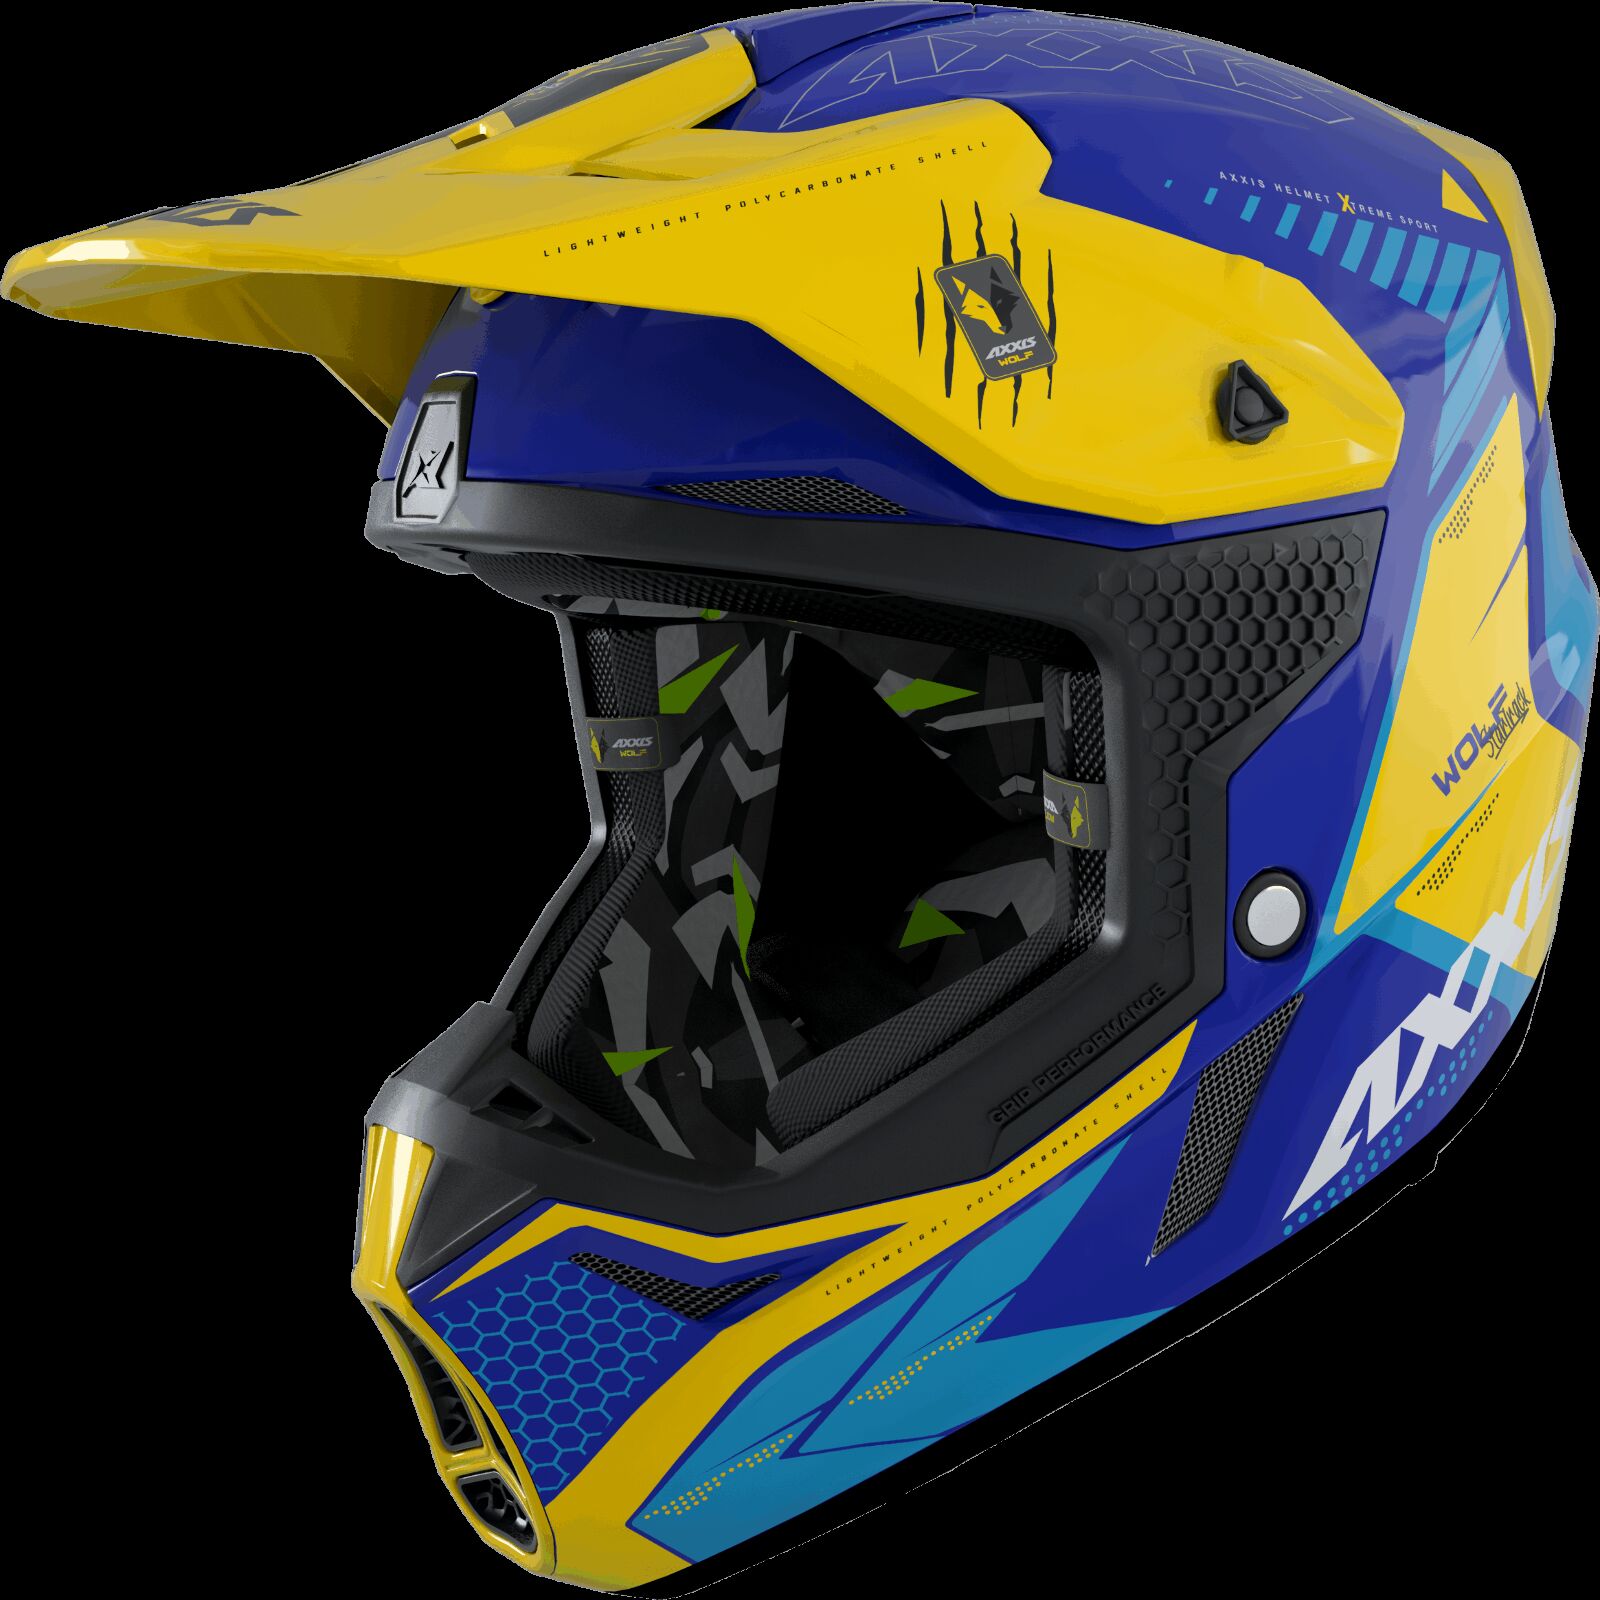 Obrázek produktu Motokrosová helma AXXIS WOLF ABS star track c17 matná modrá S 425874121734